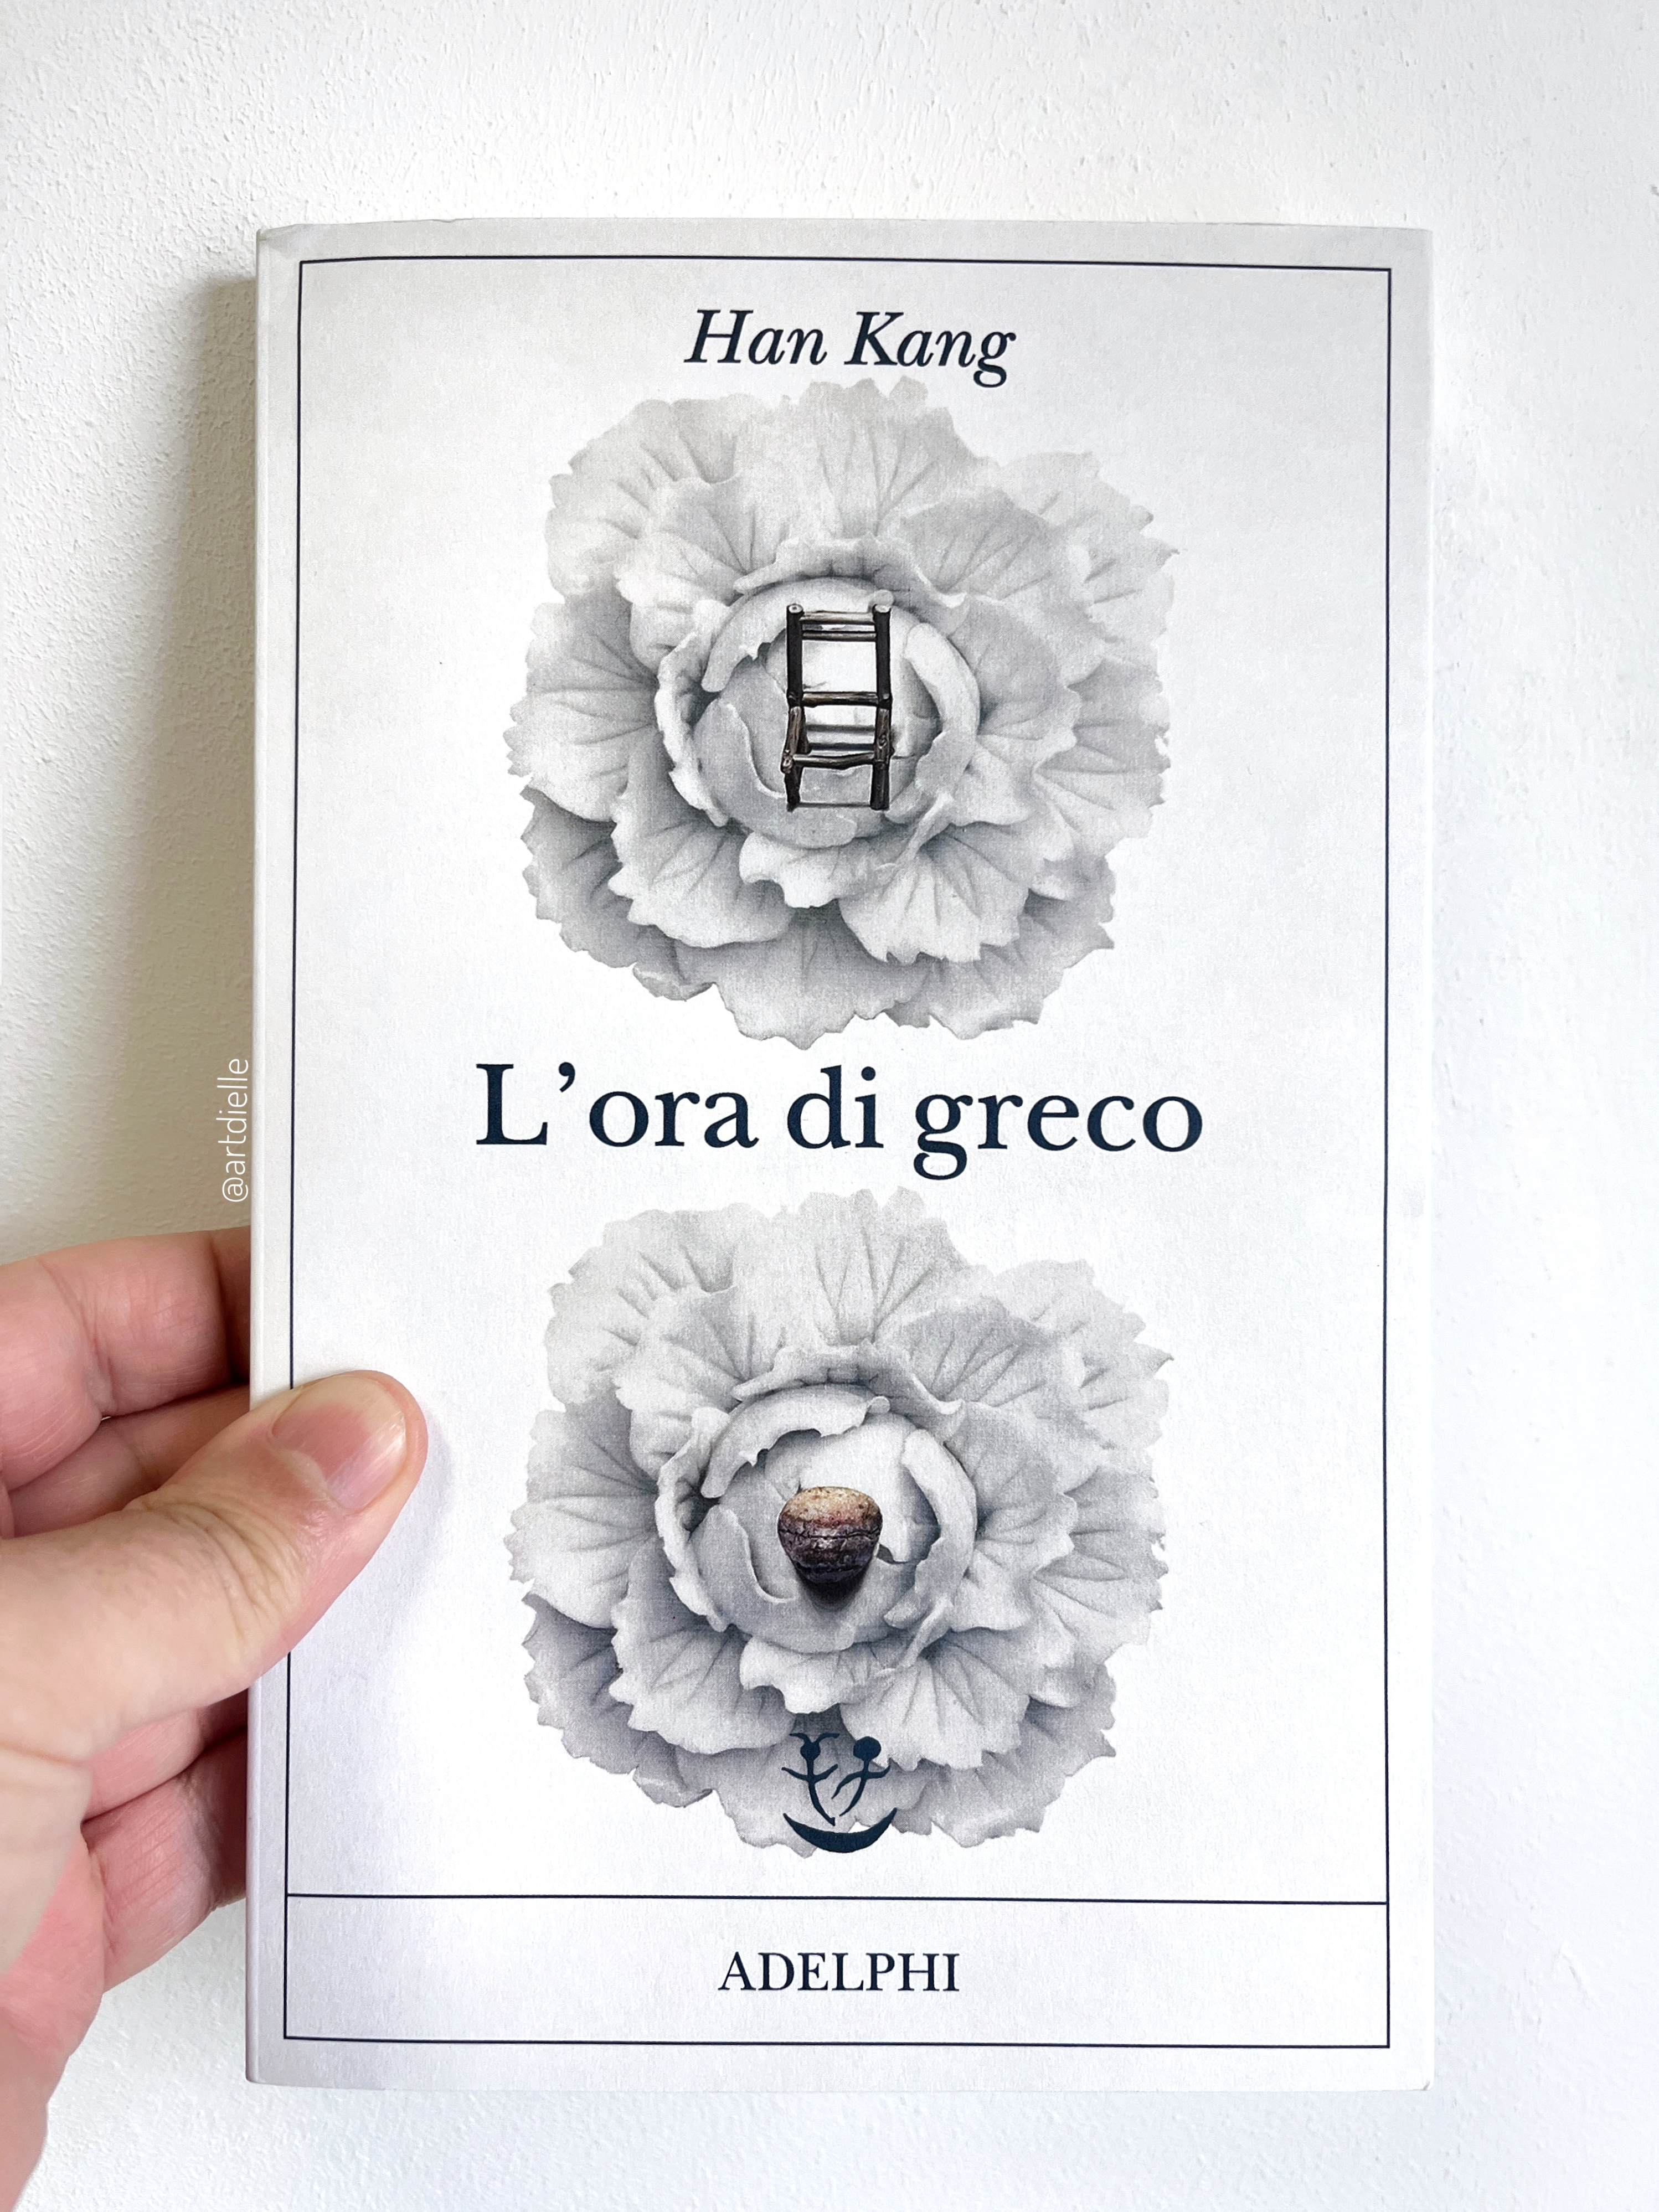 Arturo Dielle on X: Con L'ora di greco la coreana Han Kang costruisce un  romanzo in cui il testo si assottiglia pagina dopo pagina, fino a ridursi  all'essenziale. Il collasso del linguaggio